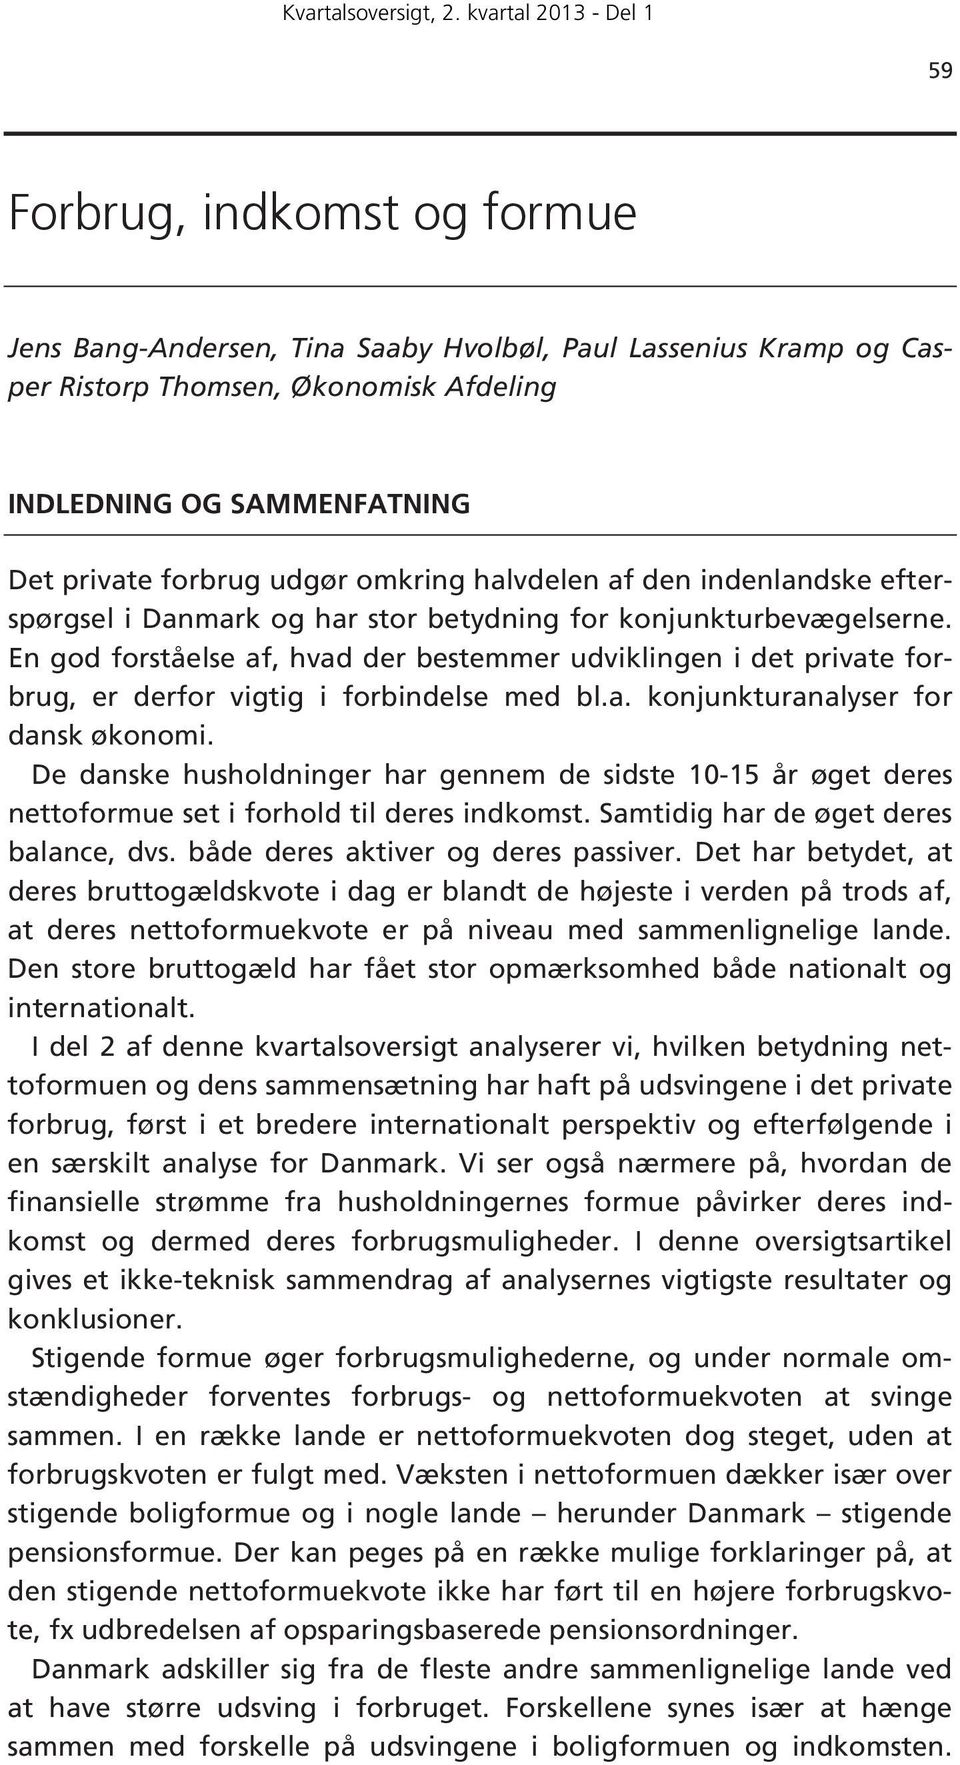 En god forståelse af, hvad der bestemmer udviklingen i det private forbrug, er derfor vigtig i forbindelse med bl.a. konjunkturanalyser for dansk økonomi.